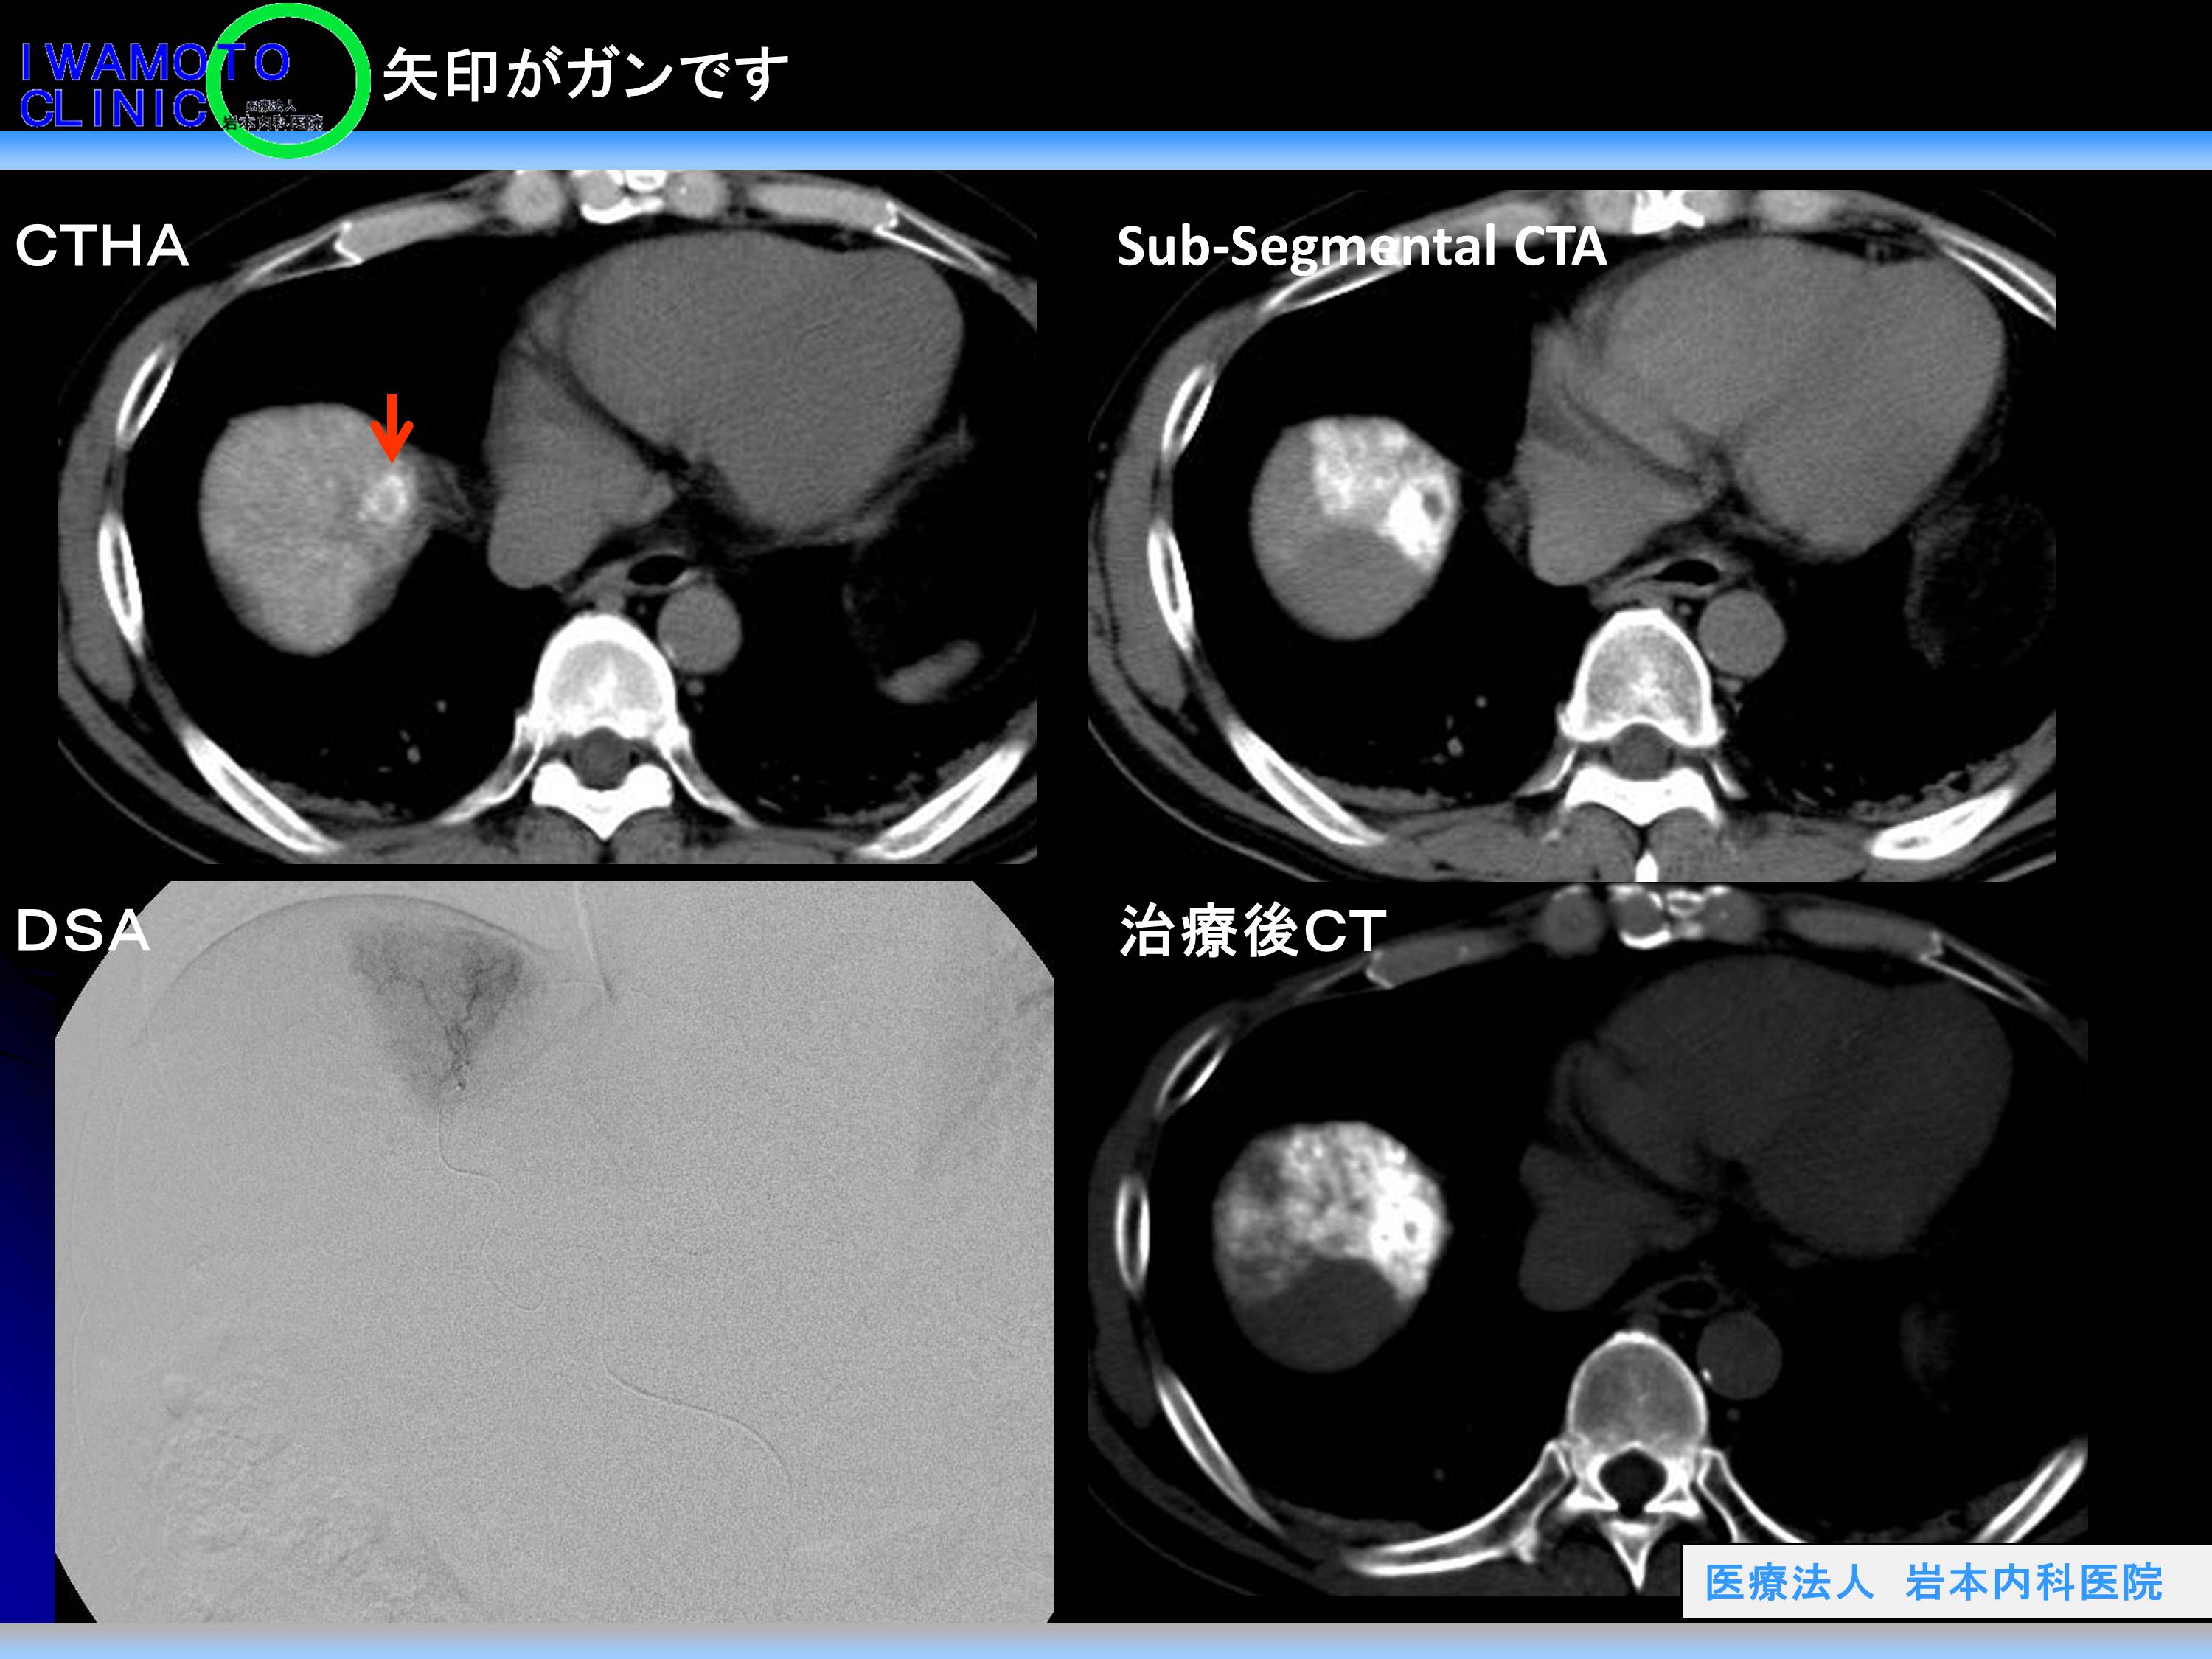 CTHA(肝動脈造影CT)で白くなる小さな結節がありました